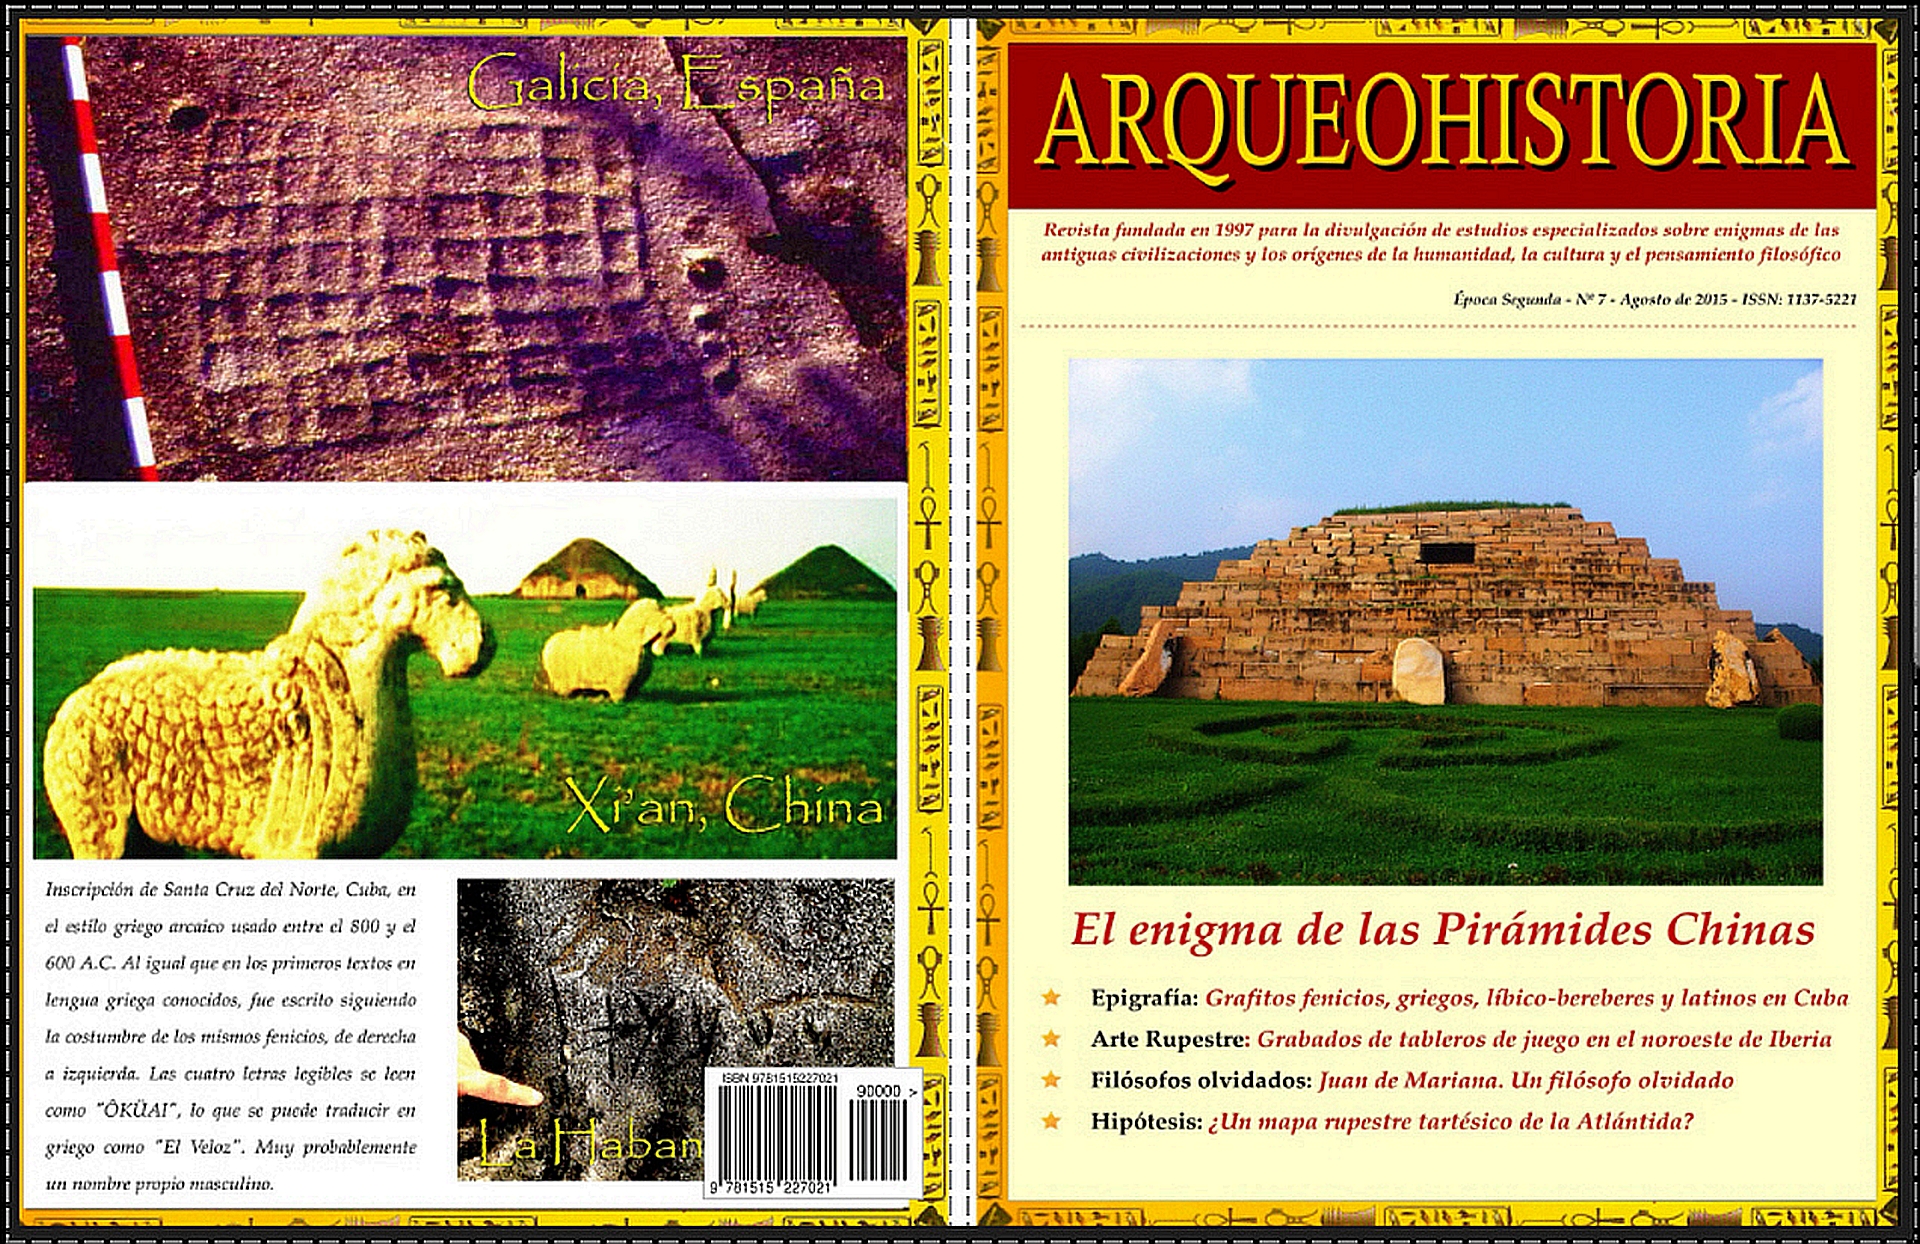 descargar revista arqueologia mexicana pdf file